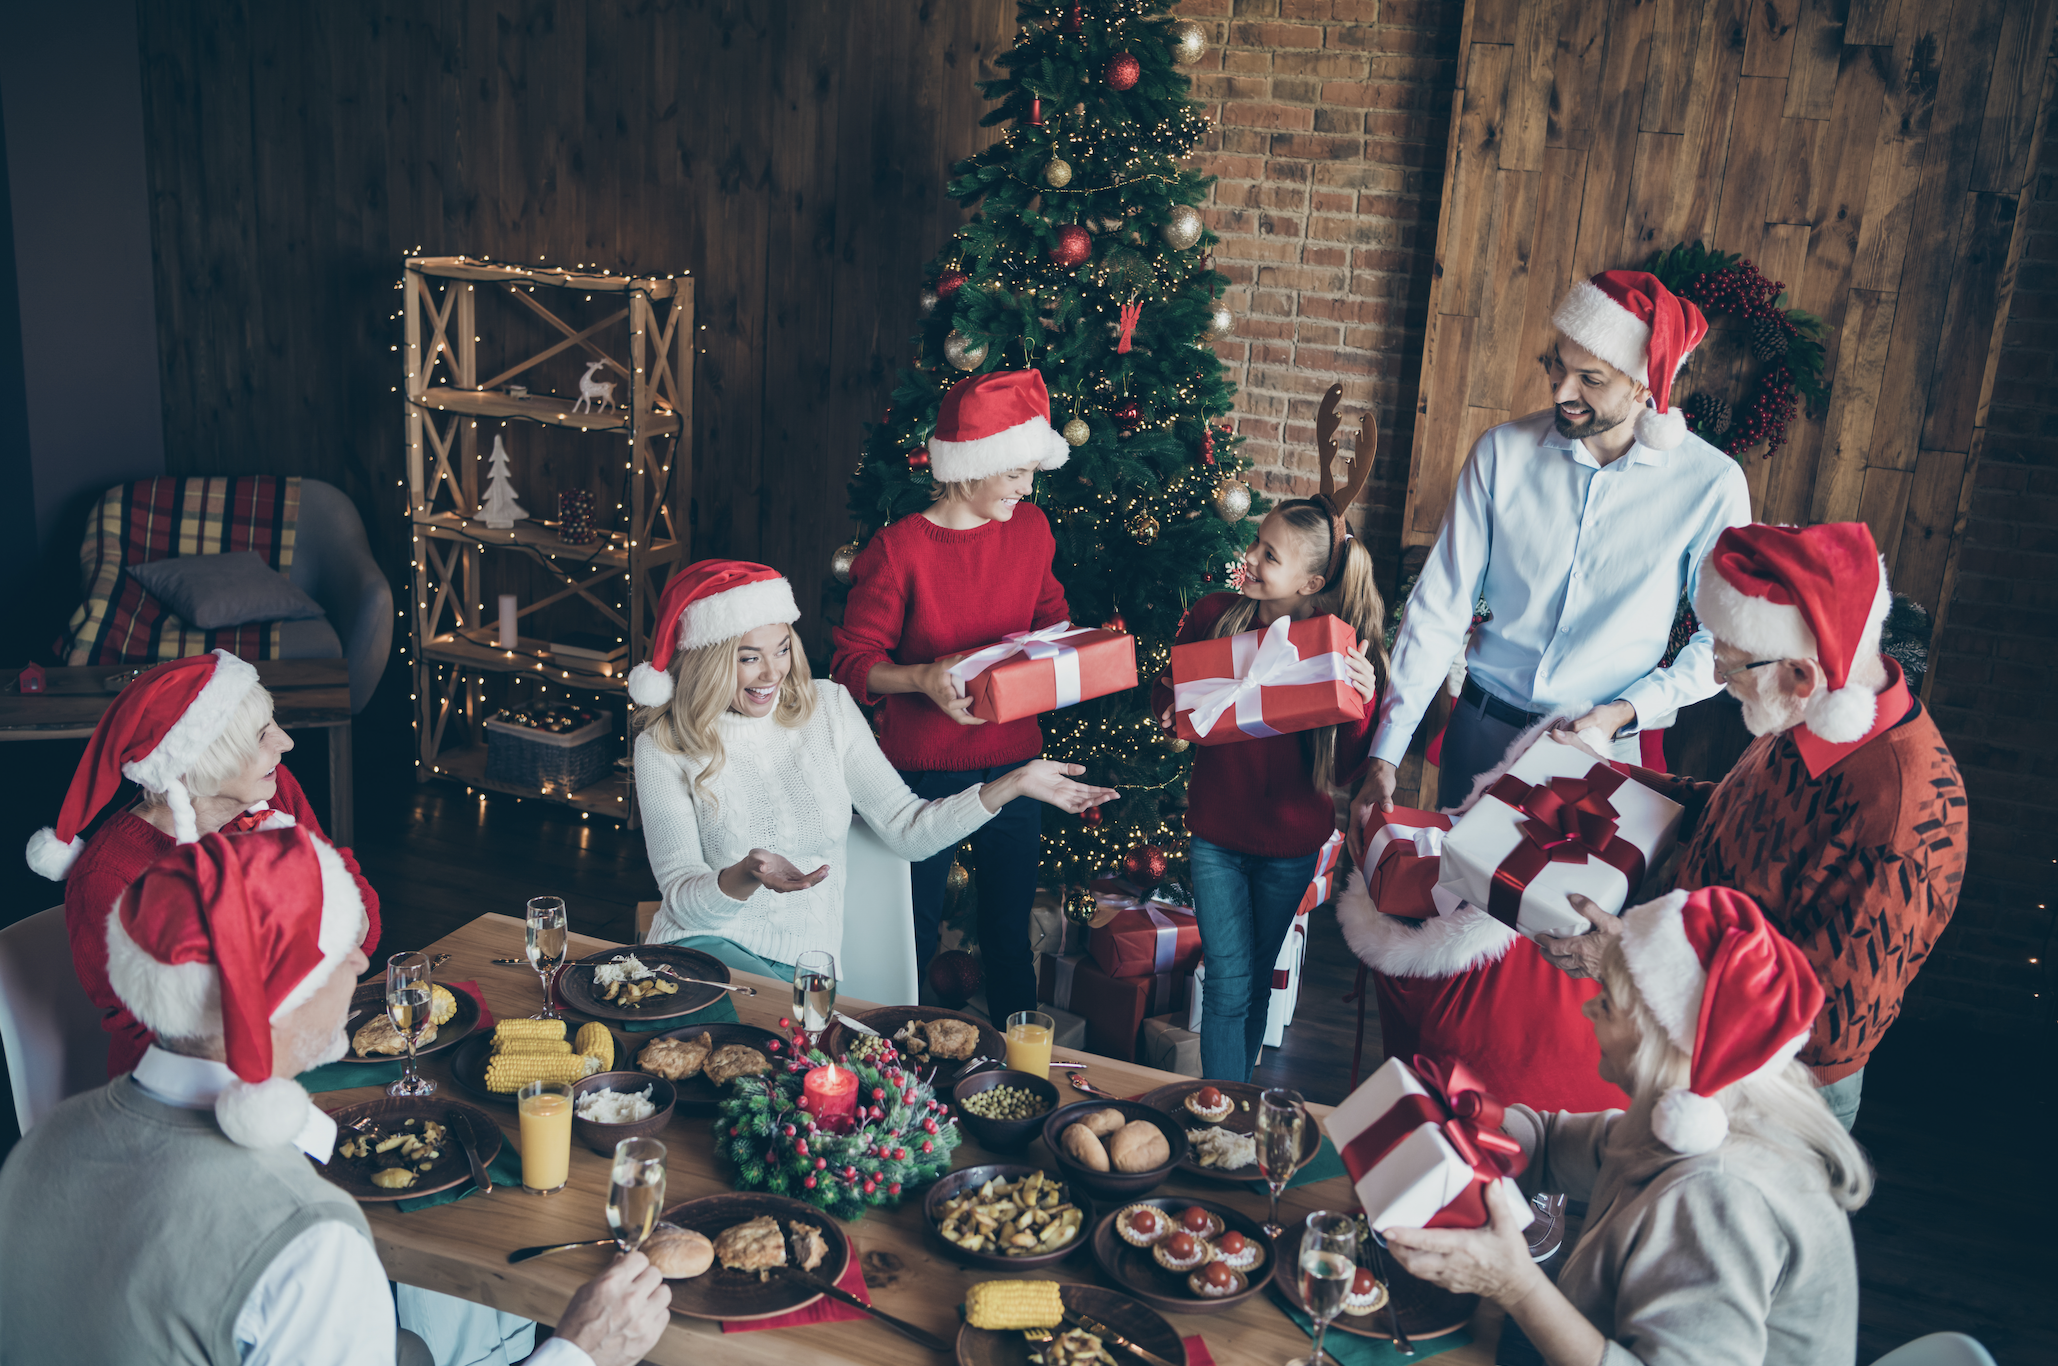 Des personnes échangent des cadeaux de Noël | Source : Shutterstock